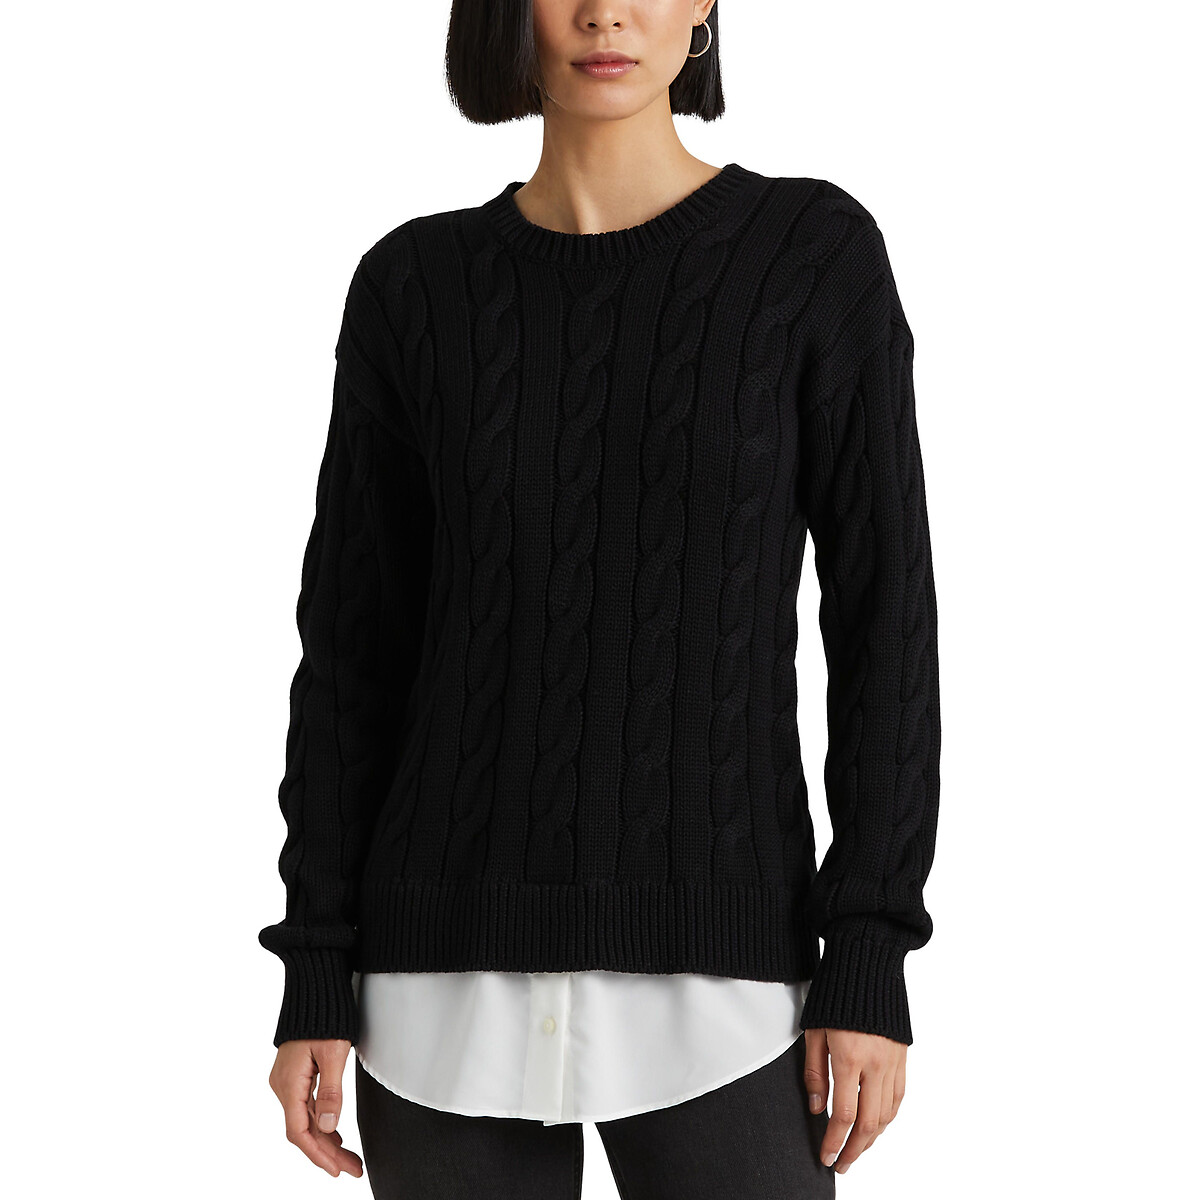 Пуловер с круглым вырезом из плетеного трикотажа S черный пуловер с круглым вырезом из плетеного трикотажа s черный